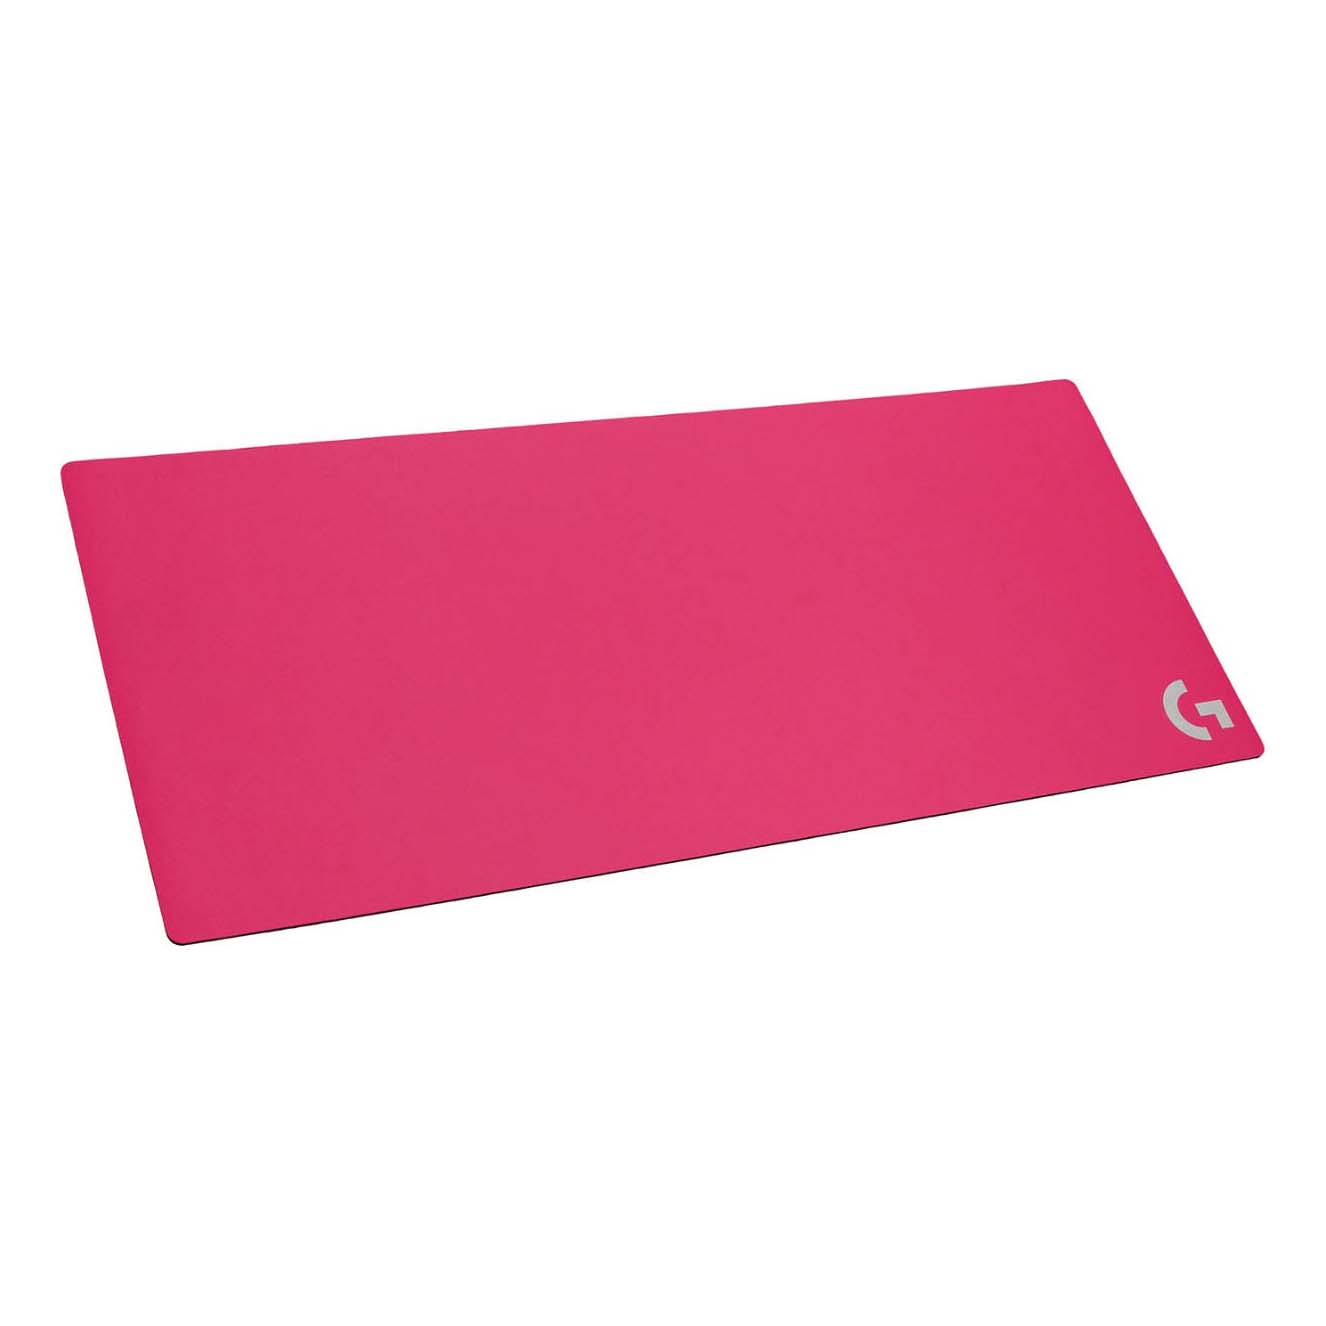 Игровой коврик для мыши Logitech G840 XL, розовый коврик для мыши logitech powerplay черный 943 000110